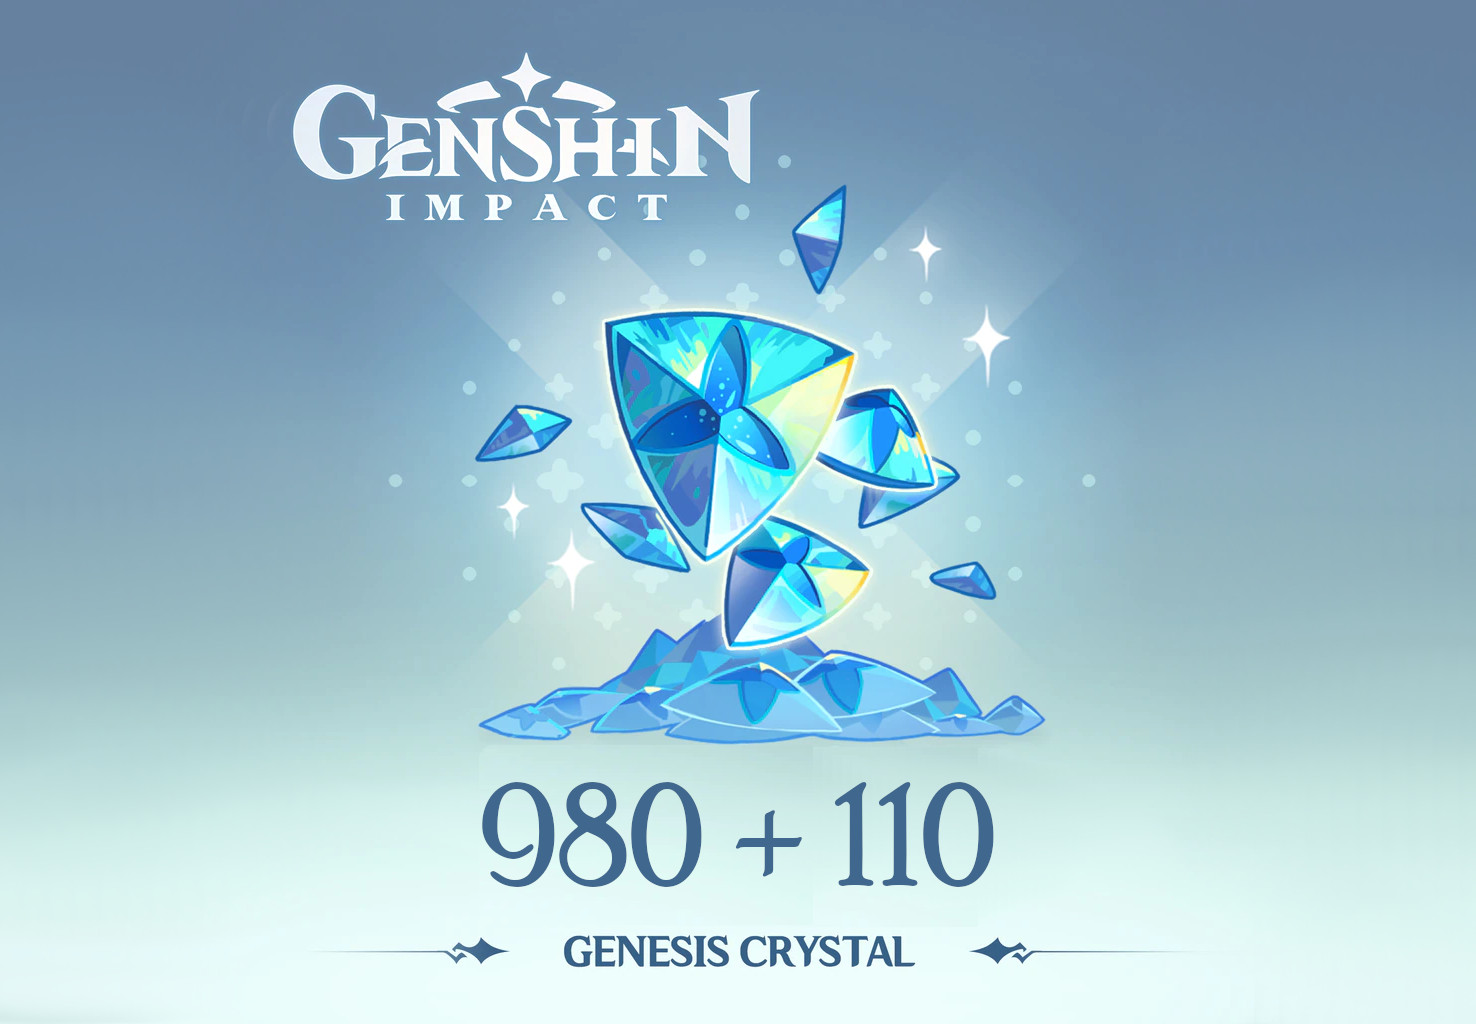 Genshin Impact - 980 + 110 Genesis Crystals Reidos Voucher $17.23